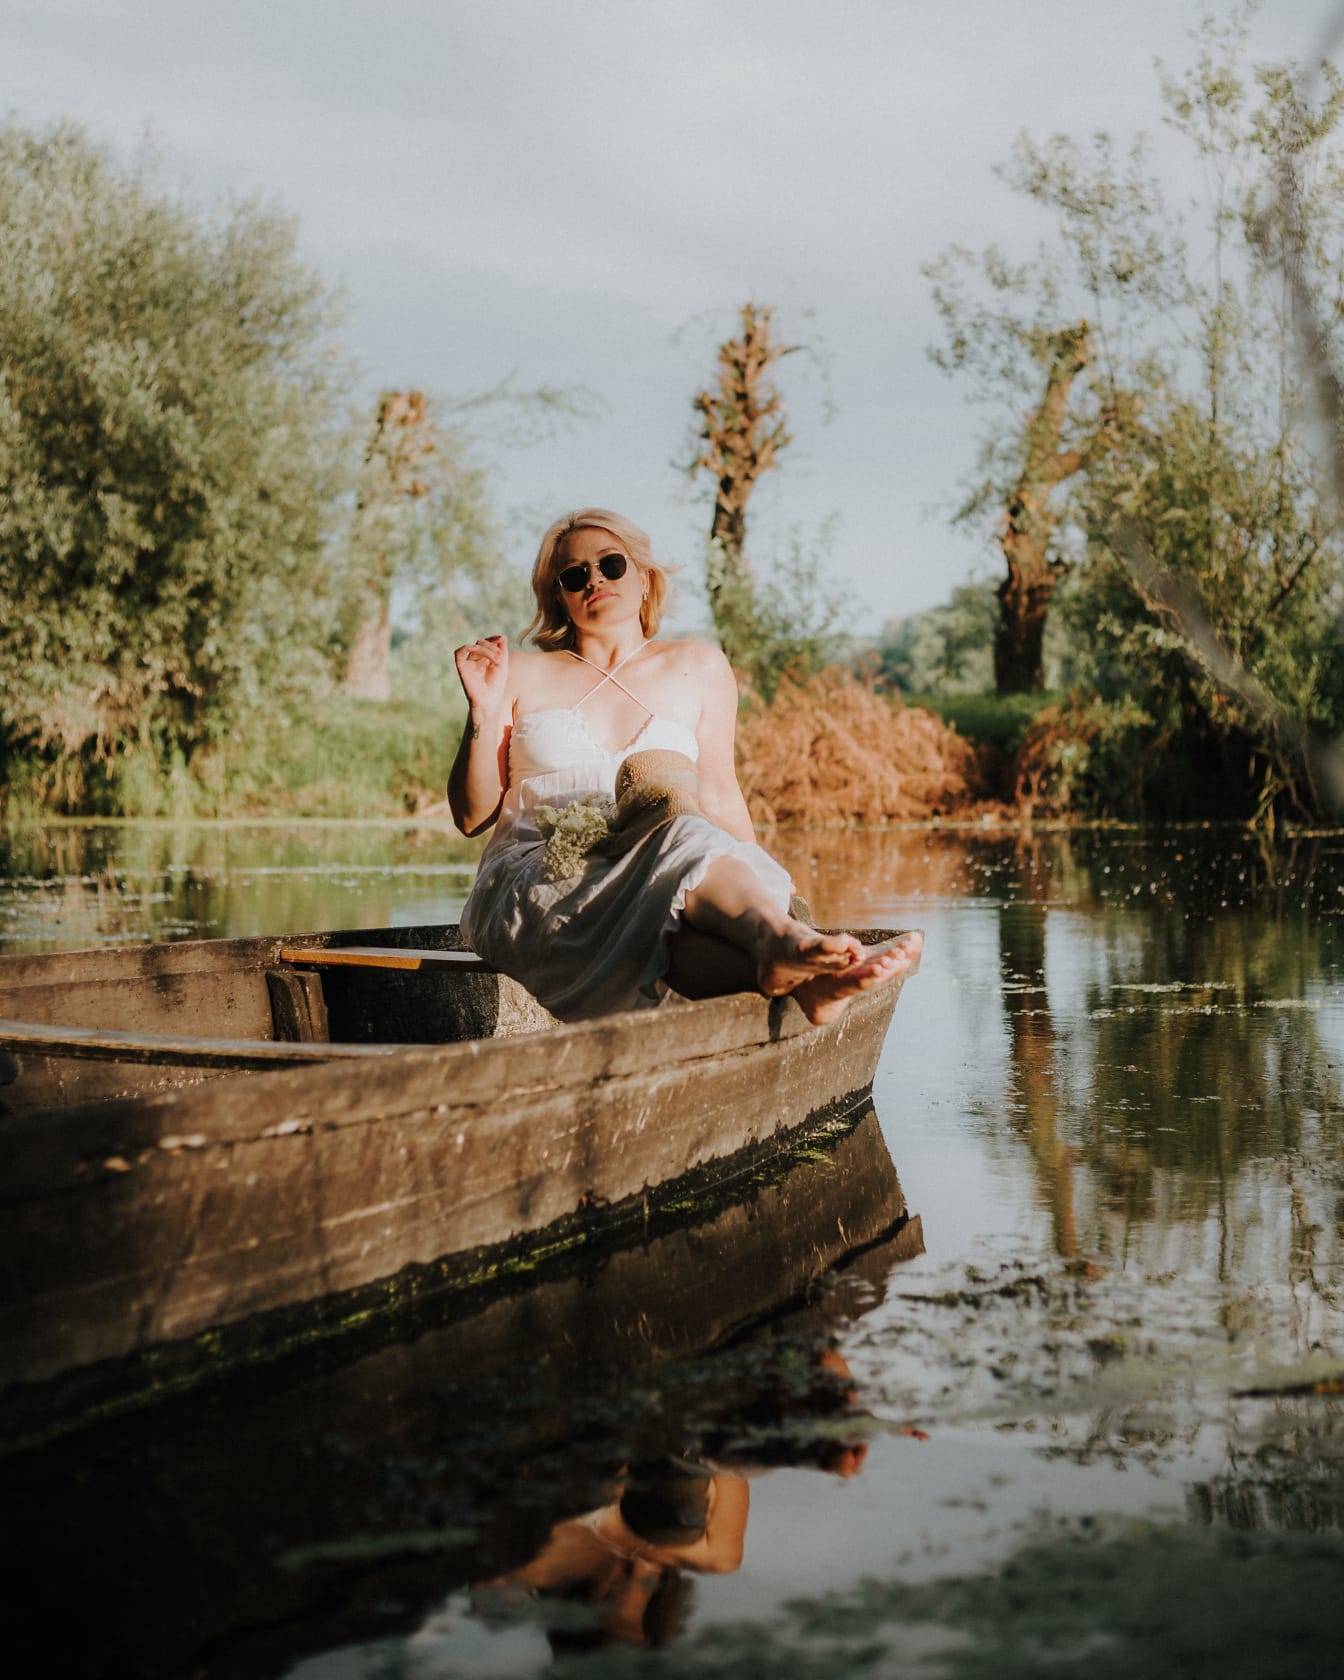 Blondynka pozuje siedząc w drewnianej łodzi nad jeziorem